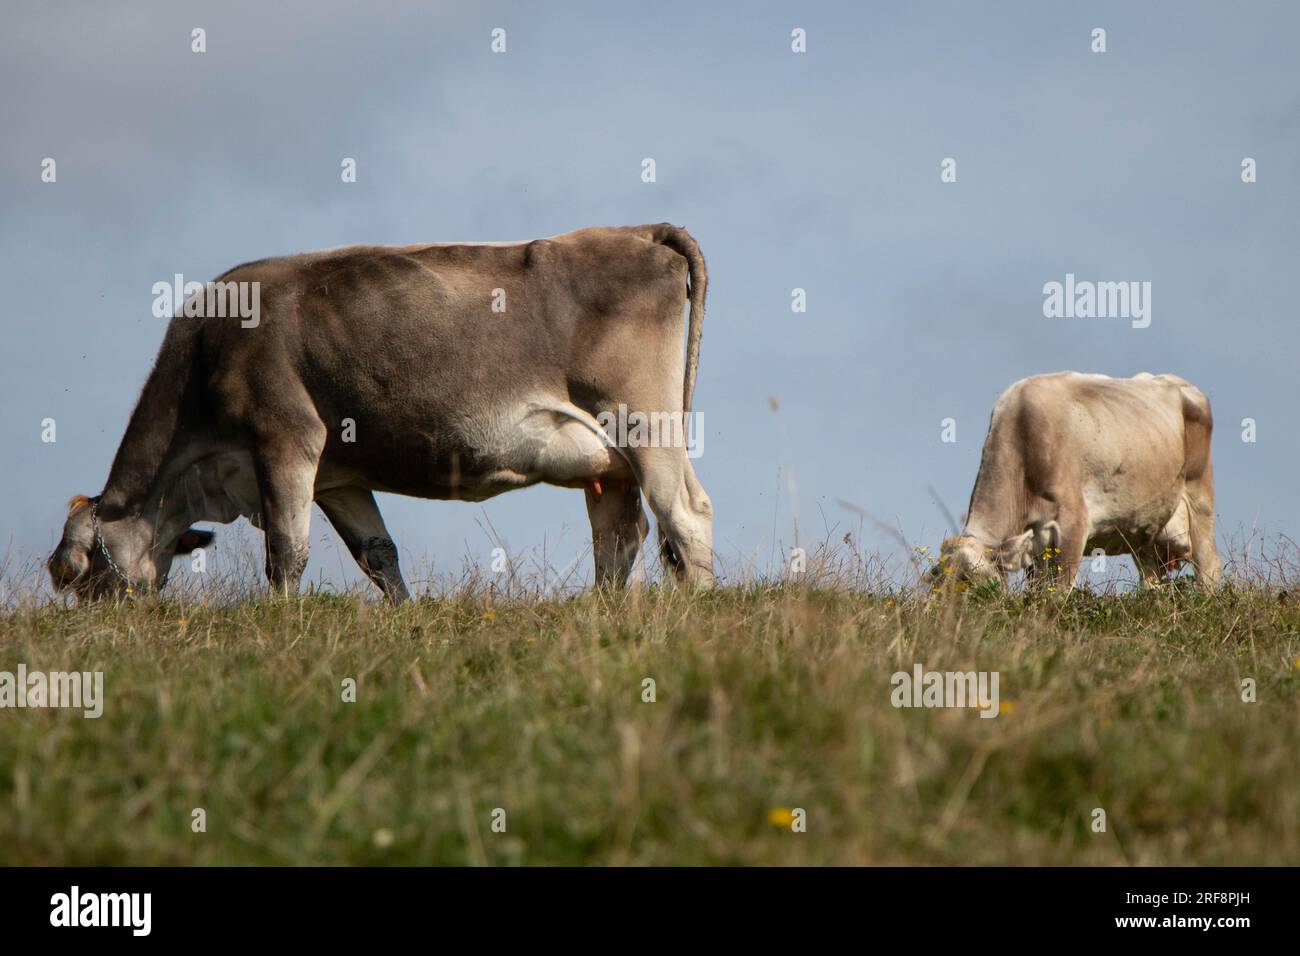 vaches de ferme pâturant dans un pâturage. Photo de haute qualité Banque D'Images